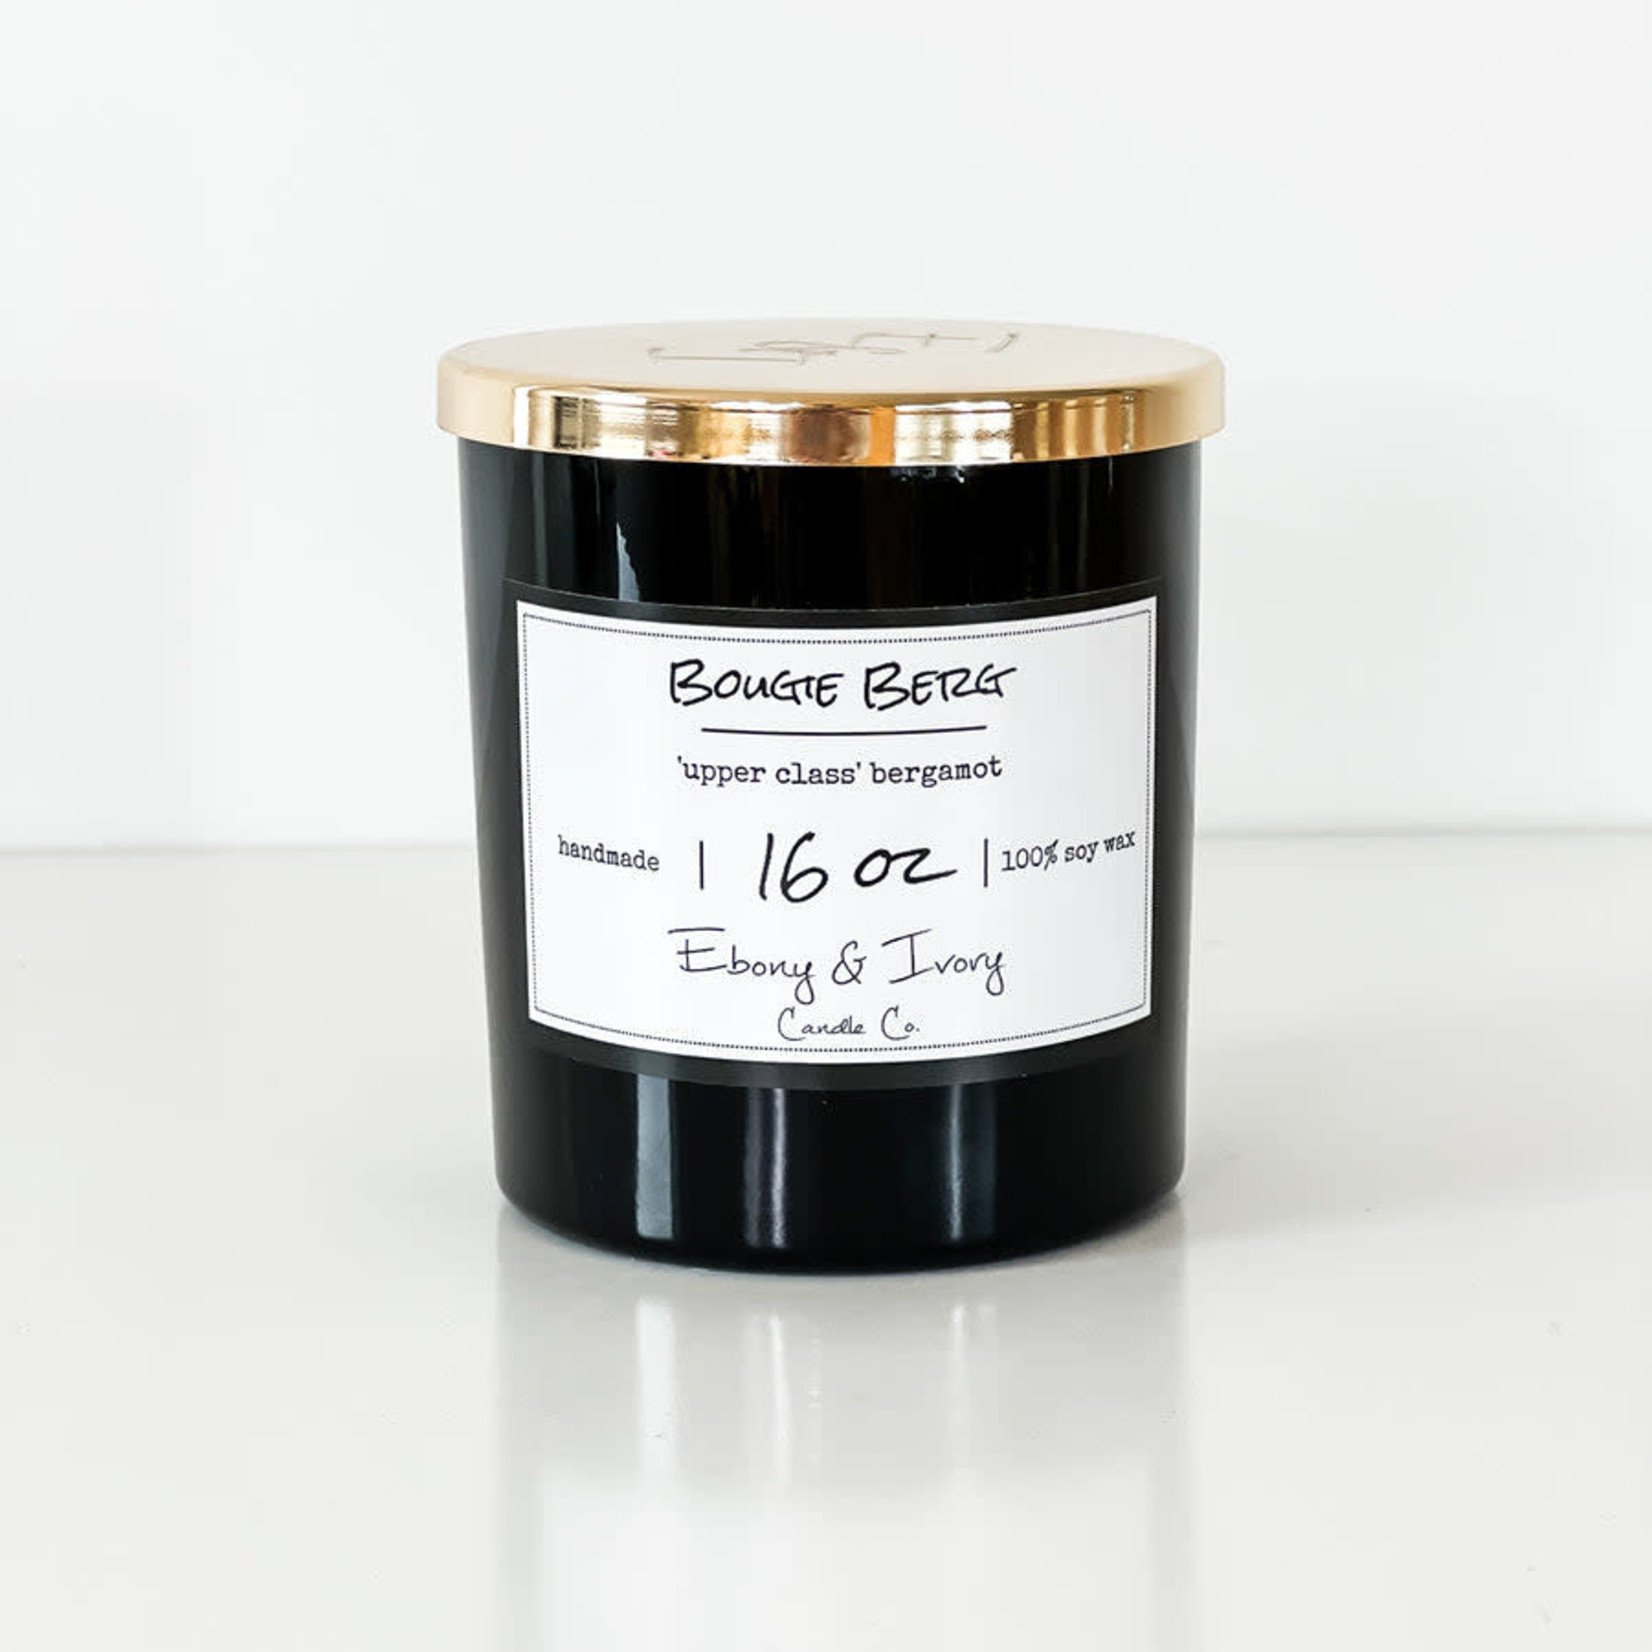 Ebony & Ivory Candle Co. - Bougie Berg